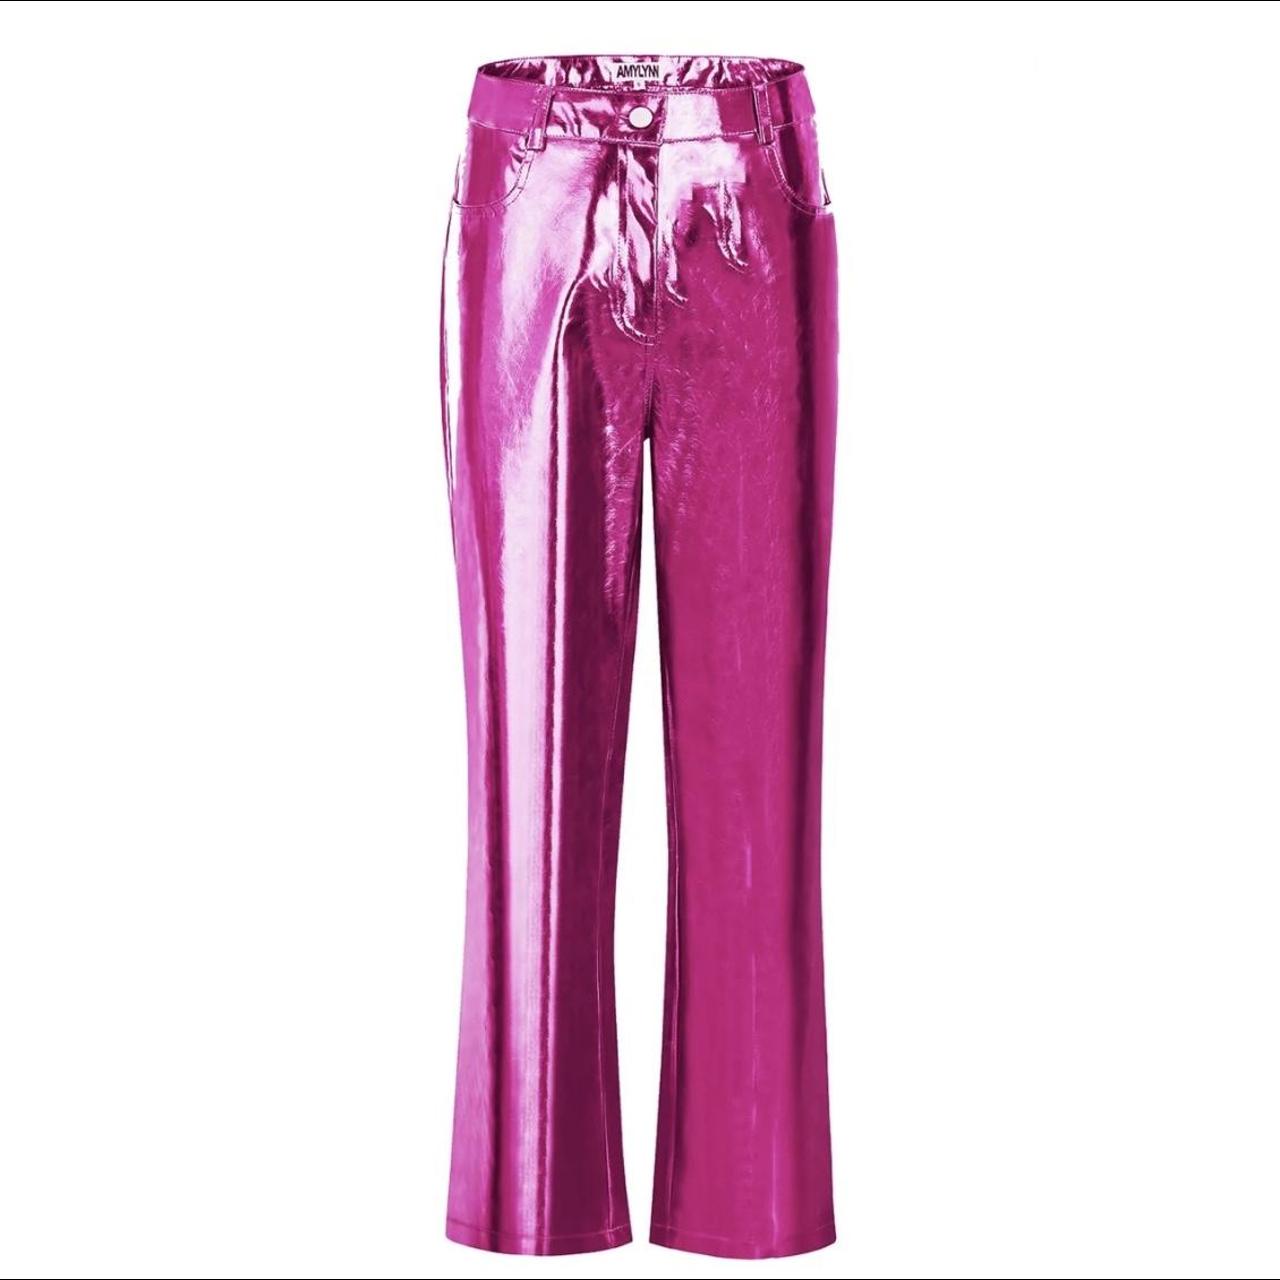 Amy Lynn pink metallic trousers size L perfect... - Depop